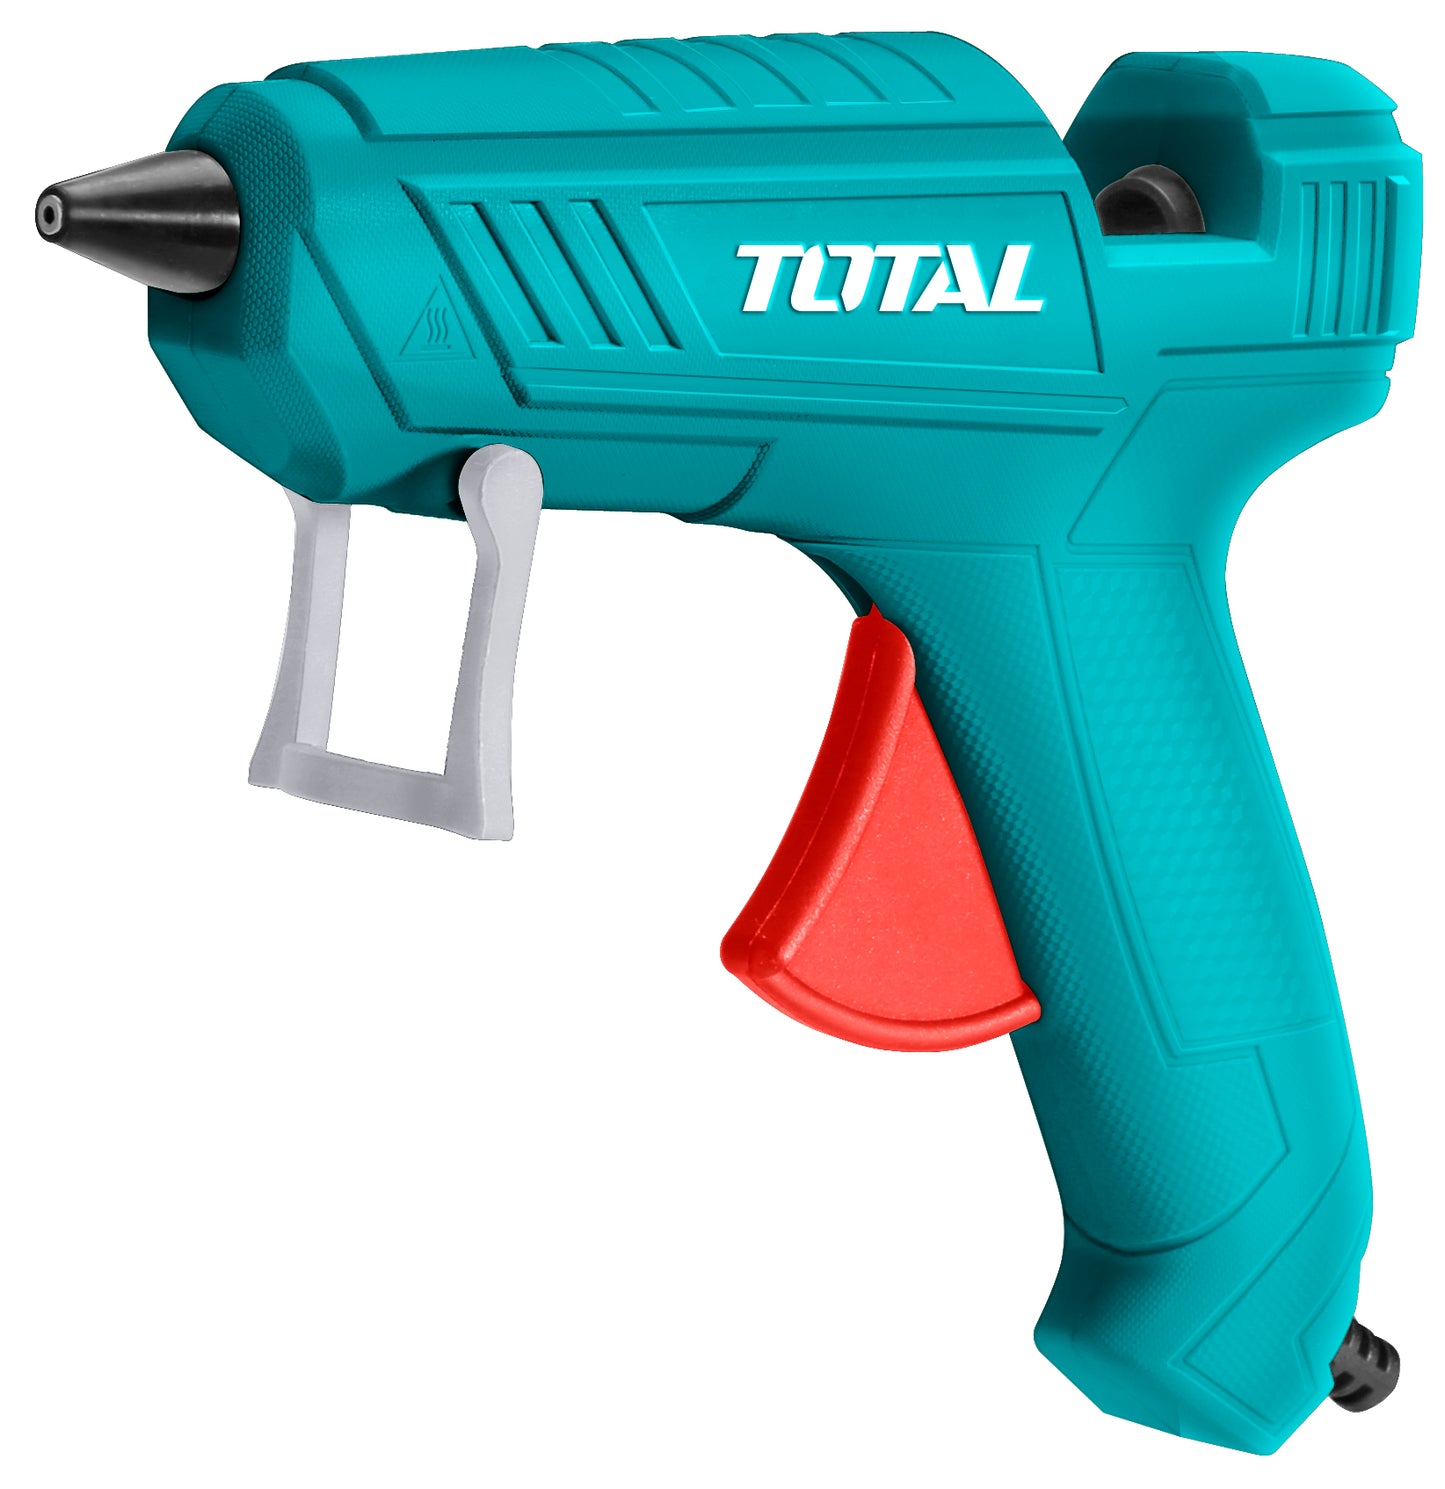 TOTAL Glue gun 100W